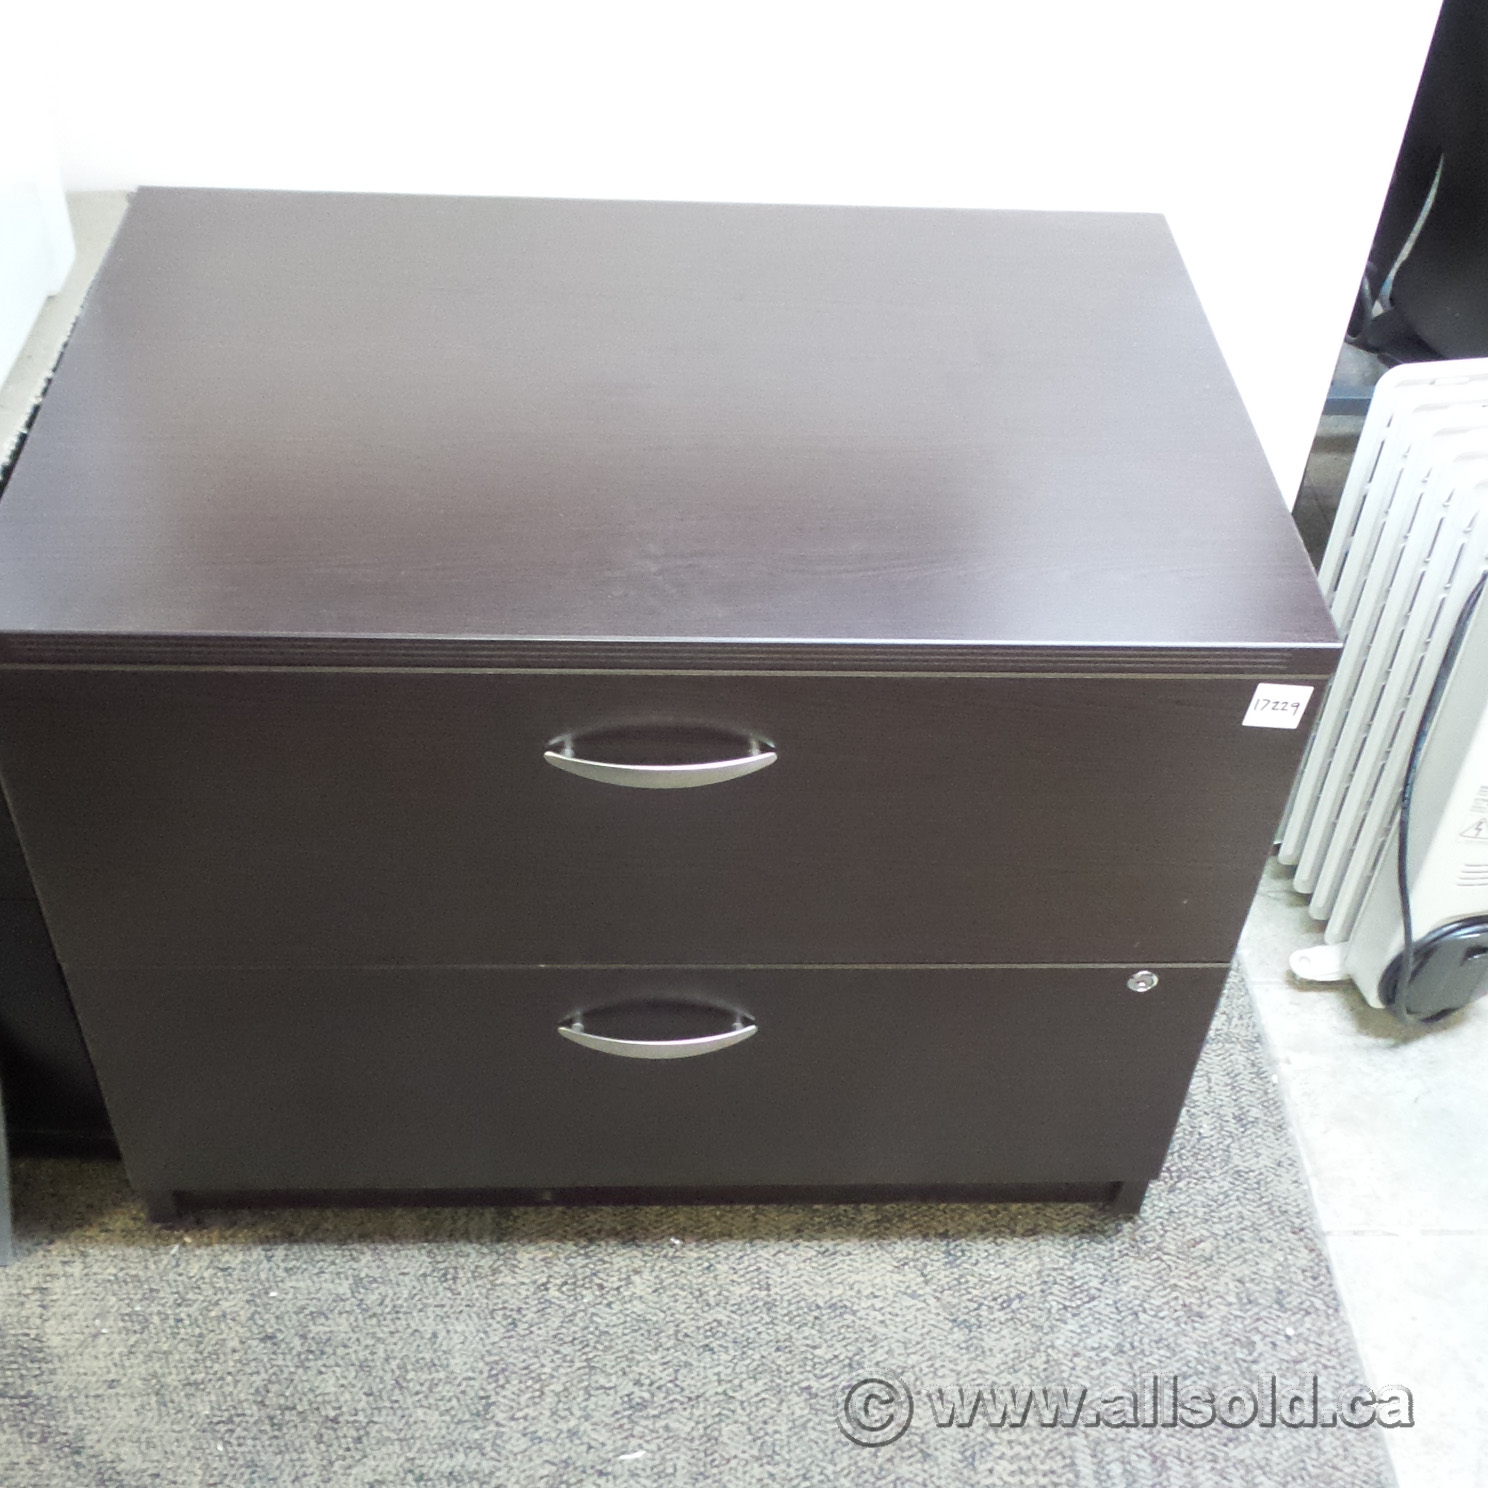 Artopex Espresso Wood 2 Drawer Lateral File Cabinet Allsold Ca